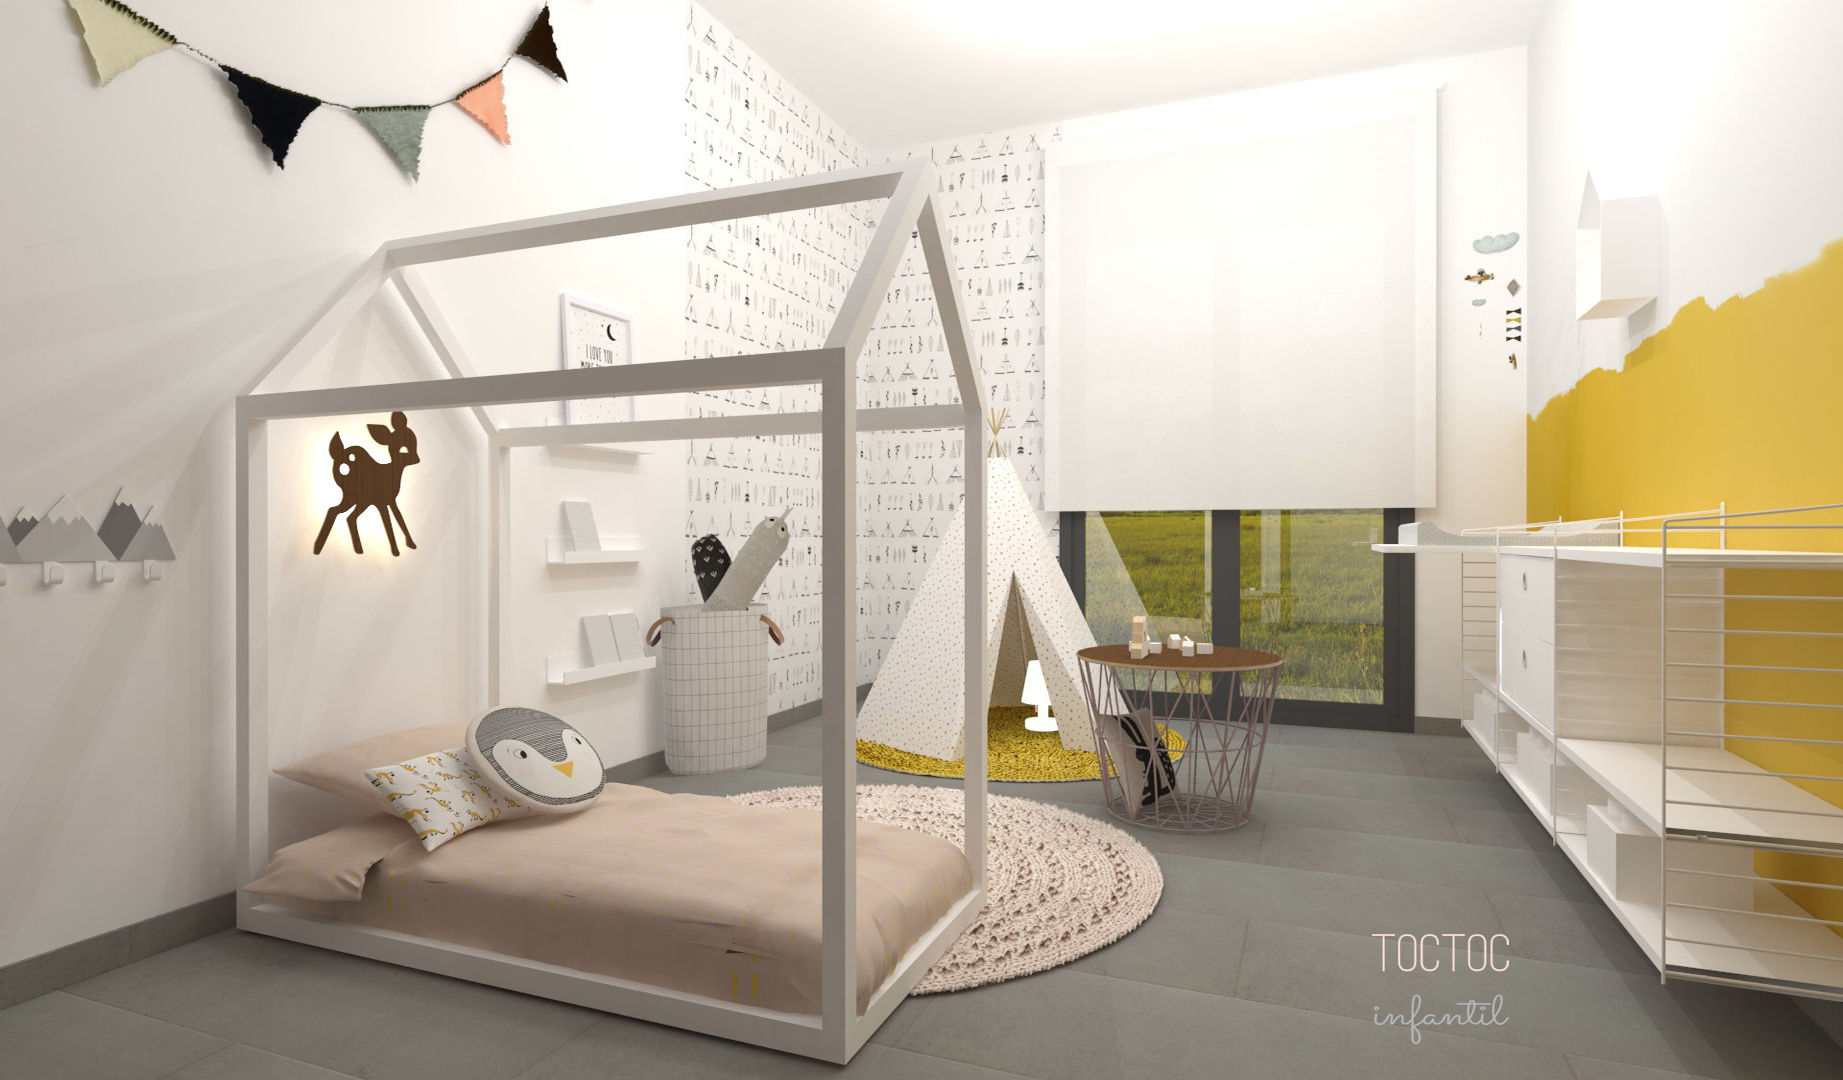 Diseño interior de dormitorio infantil Método Montessori en casa TocToc Dormitorios infantiles escandinavos